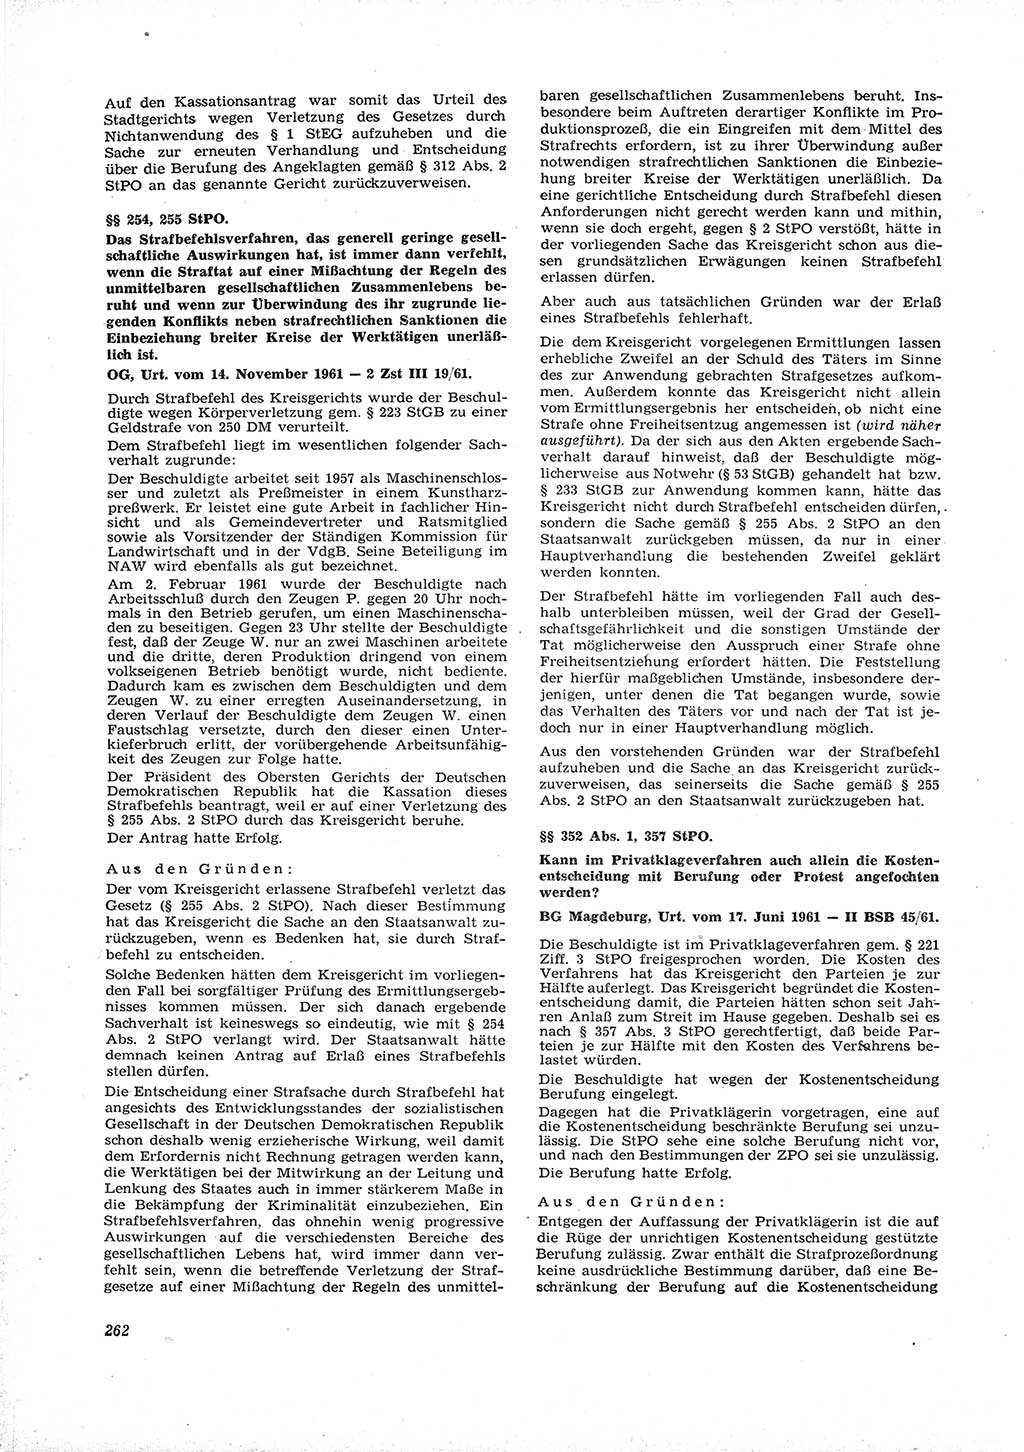 Neue Justiz (NJ), Zeitschrift für Recht und Rechtswissenschaft [Deutsche Demokratische Republik (DDR)], 16. Jahrgang 1962, Seite 262 (NJ DDR 1962, S. 262)